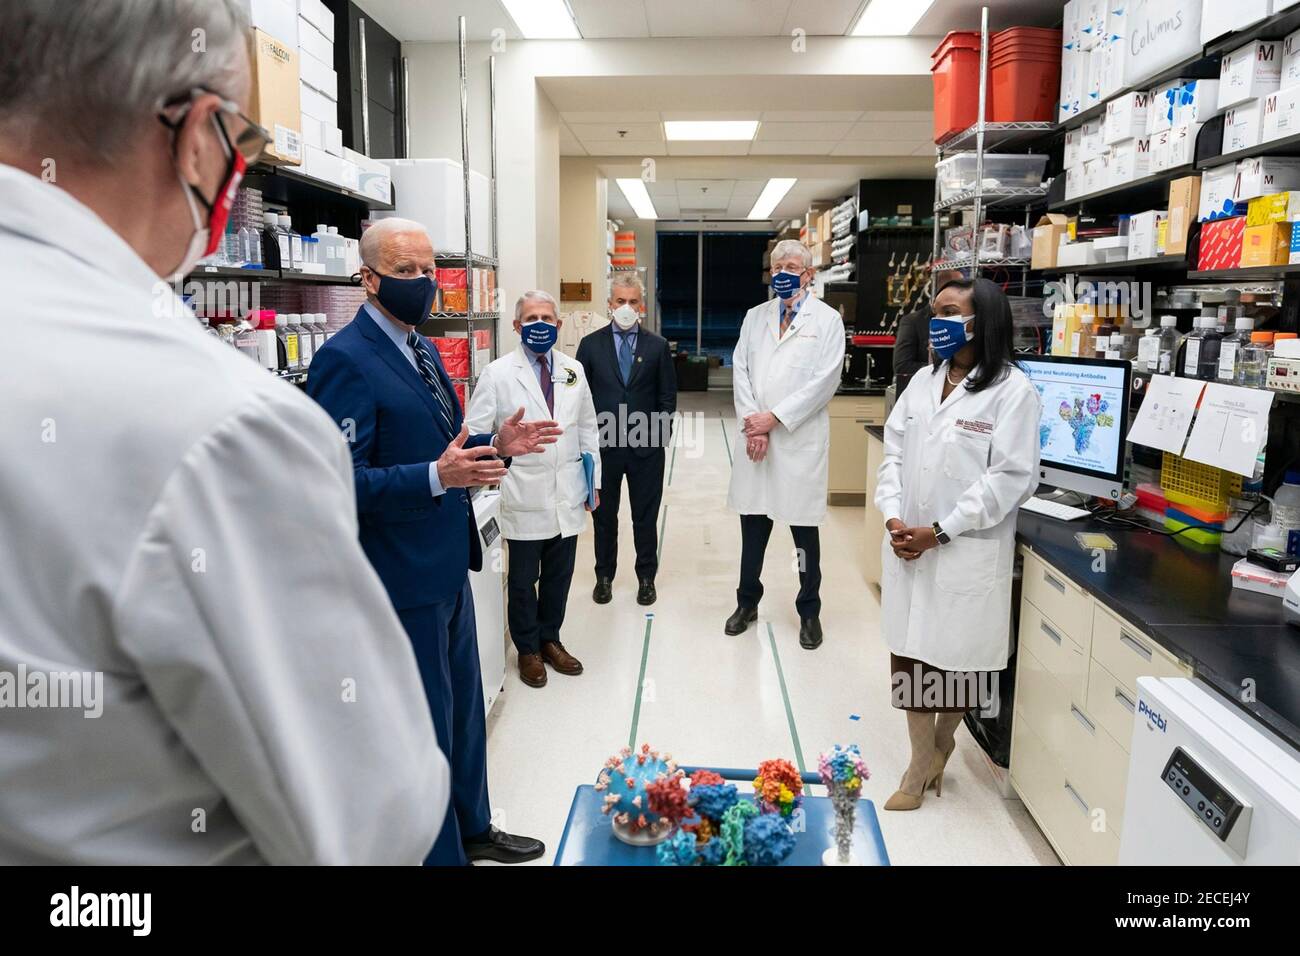 Il presidente degli Stati Uniti Joe Biden parla con i medici di ricerca presso il laboratorio di patogenesi virale durante una visita al Centro di ricerca sui vaccini presso gli Istituti nazionali di salute 11 febbraio 2021 a Bethesda, Maryland. Foto Stock